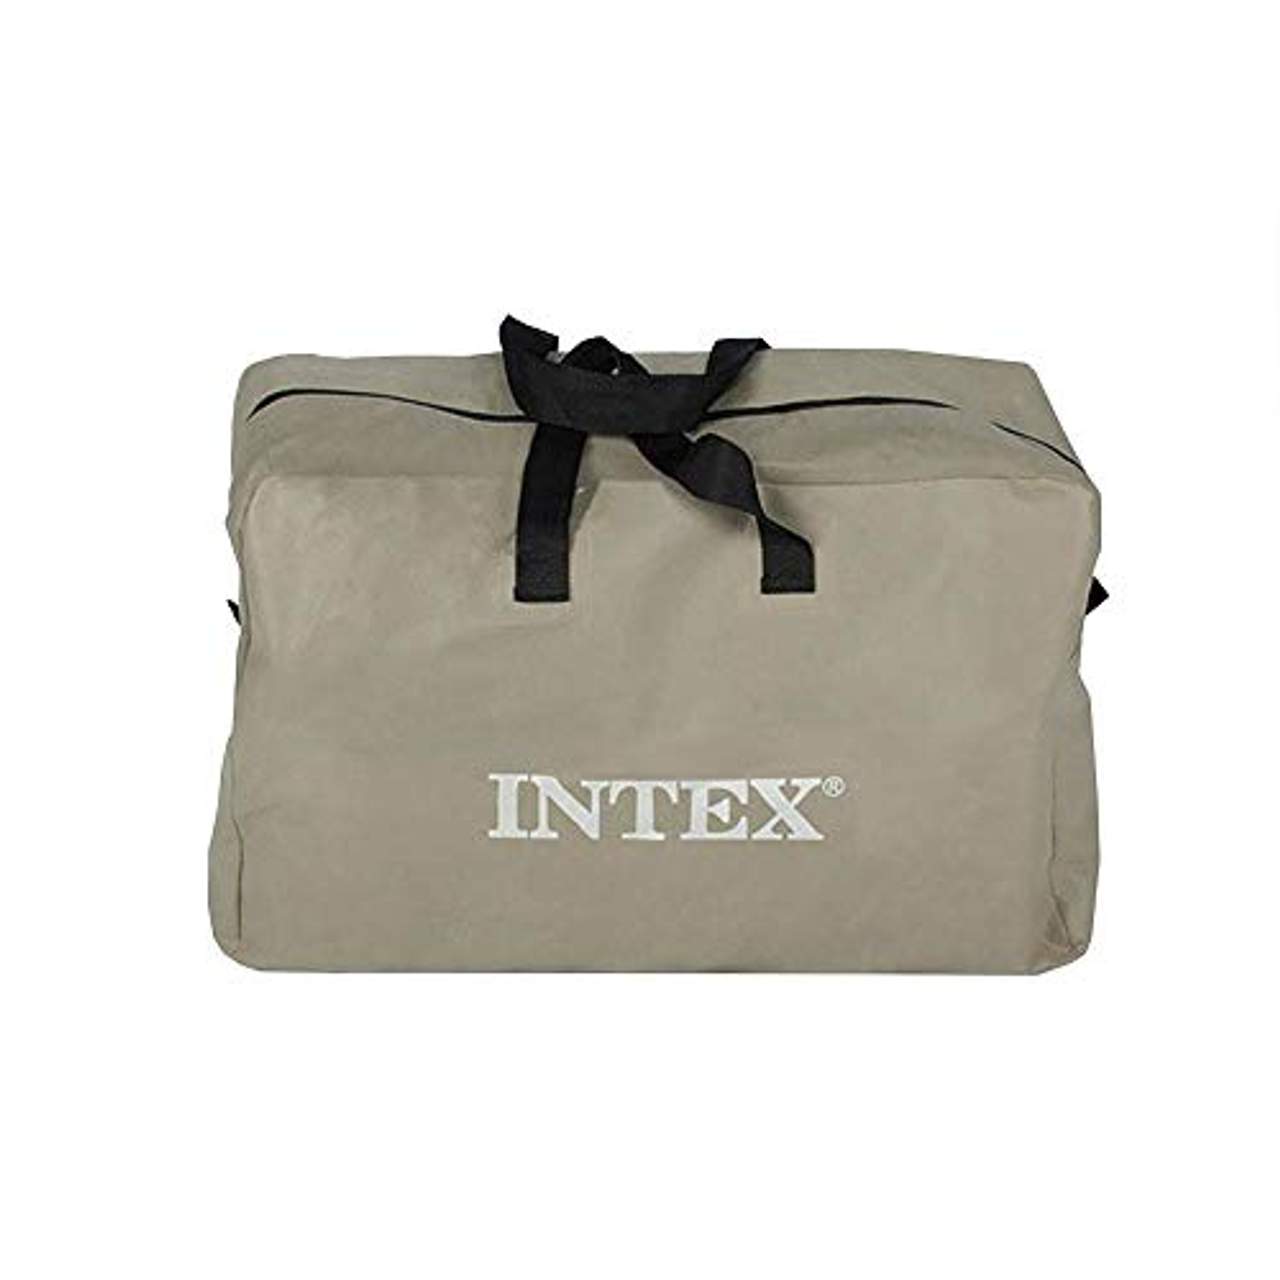  Intex Excursion 5